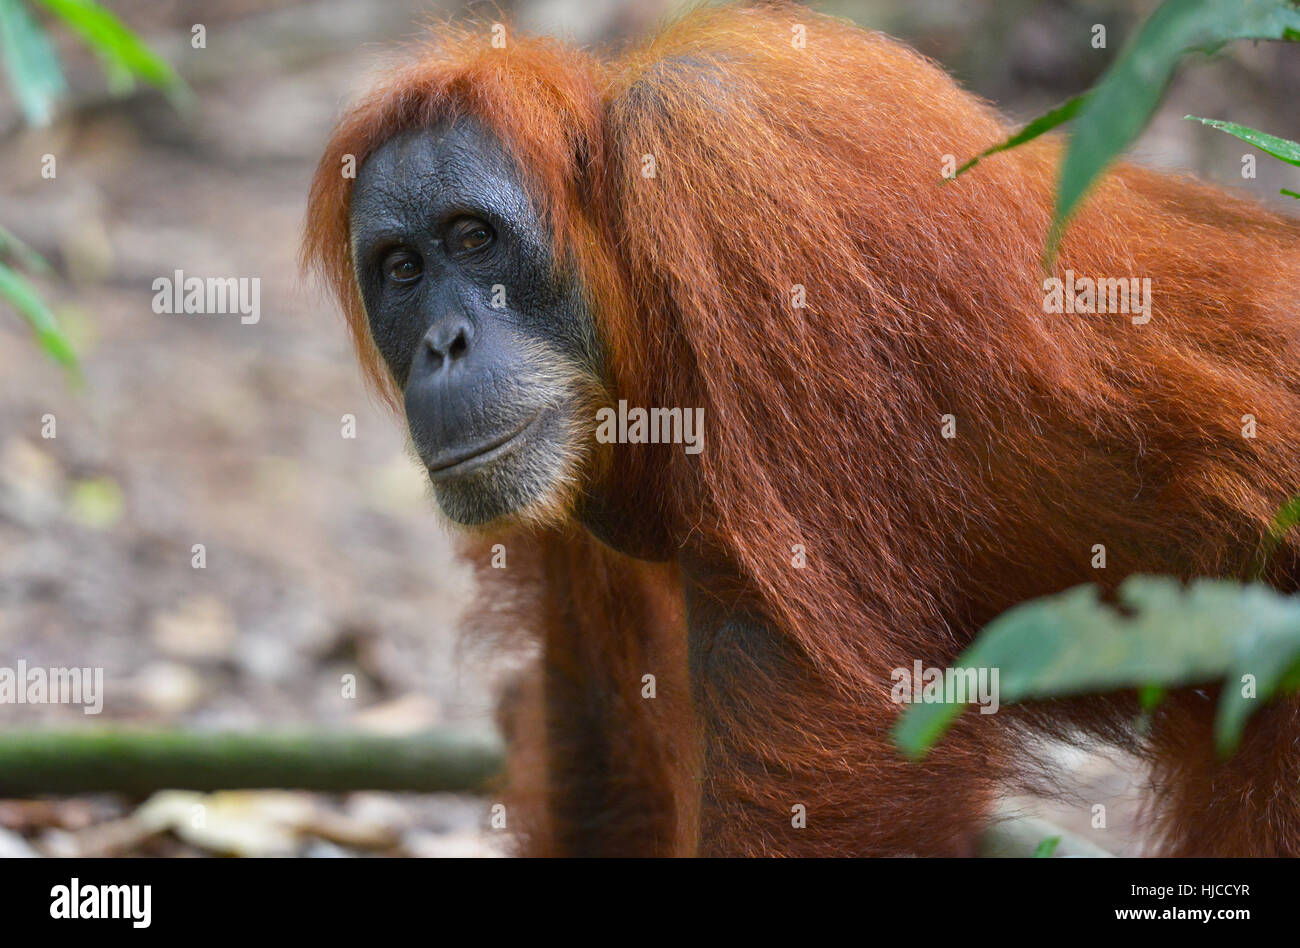 Orangutan in the jungle in Bukit Lawang, Sumatra, Indonesia Stock Photo